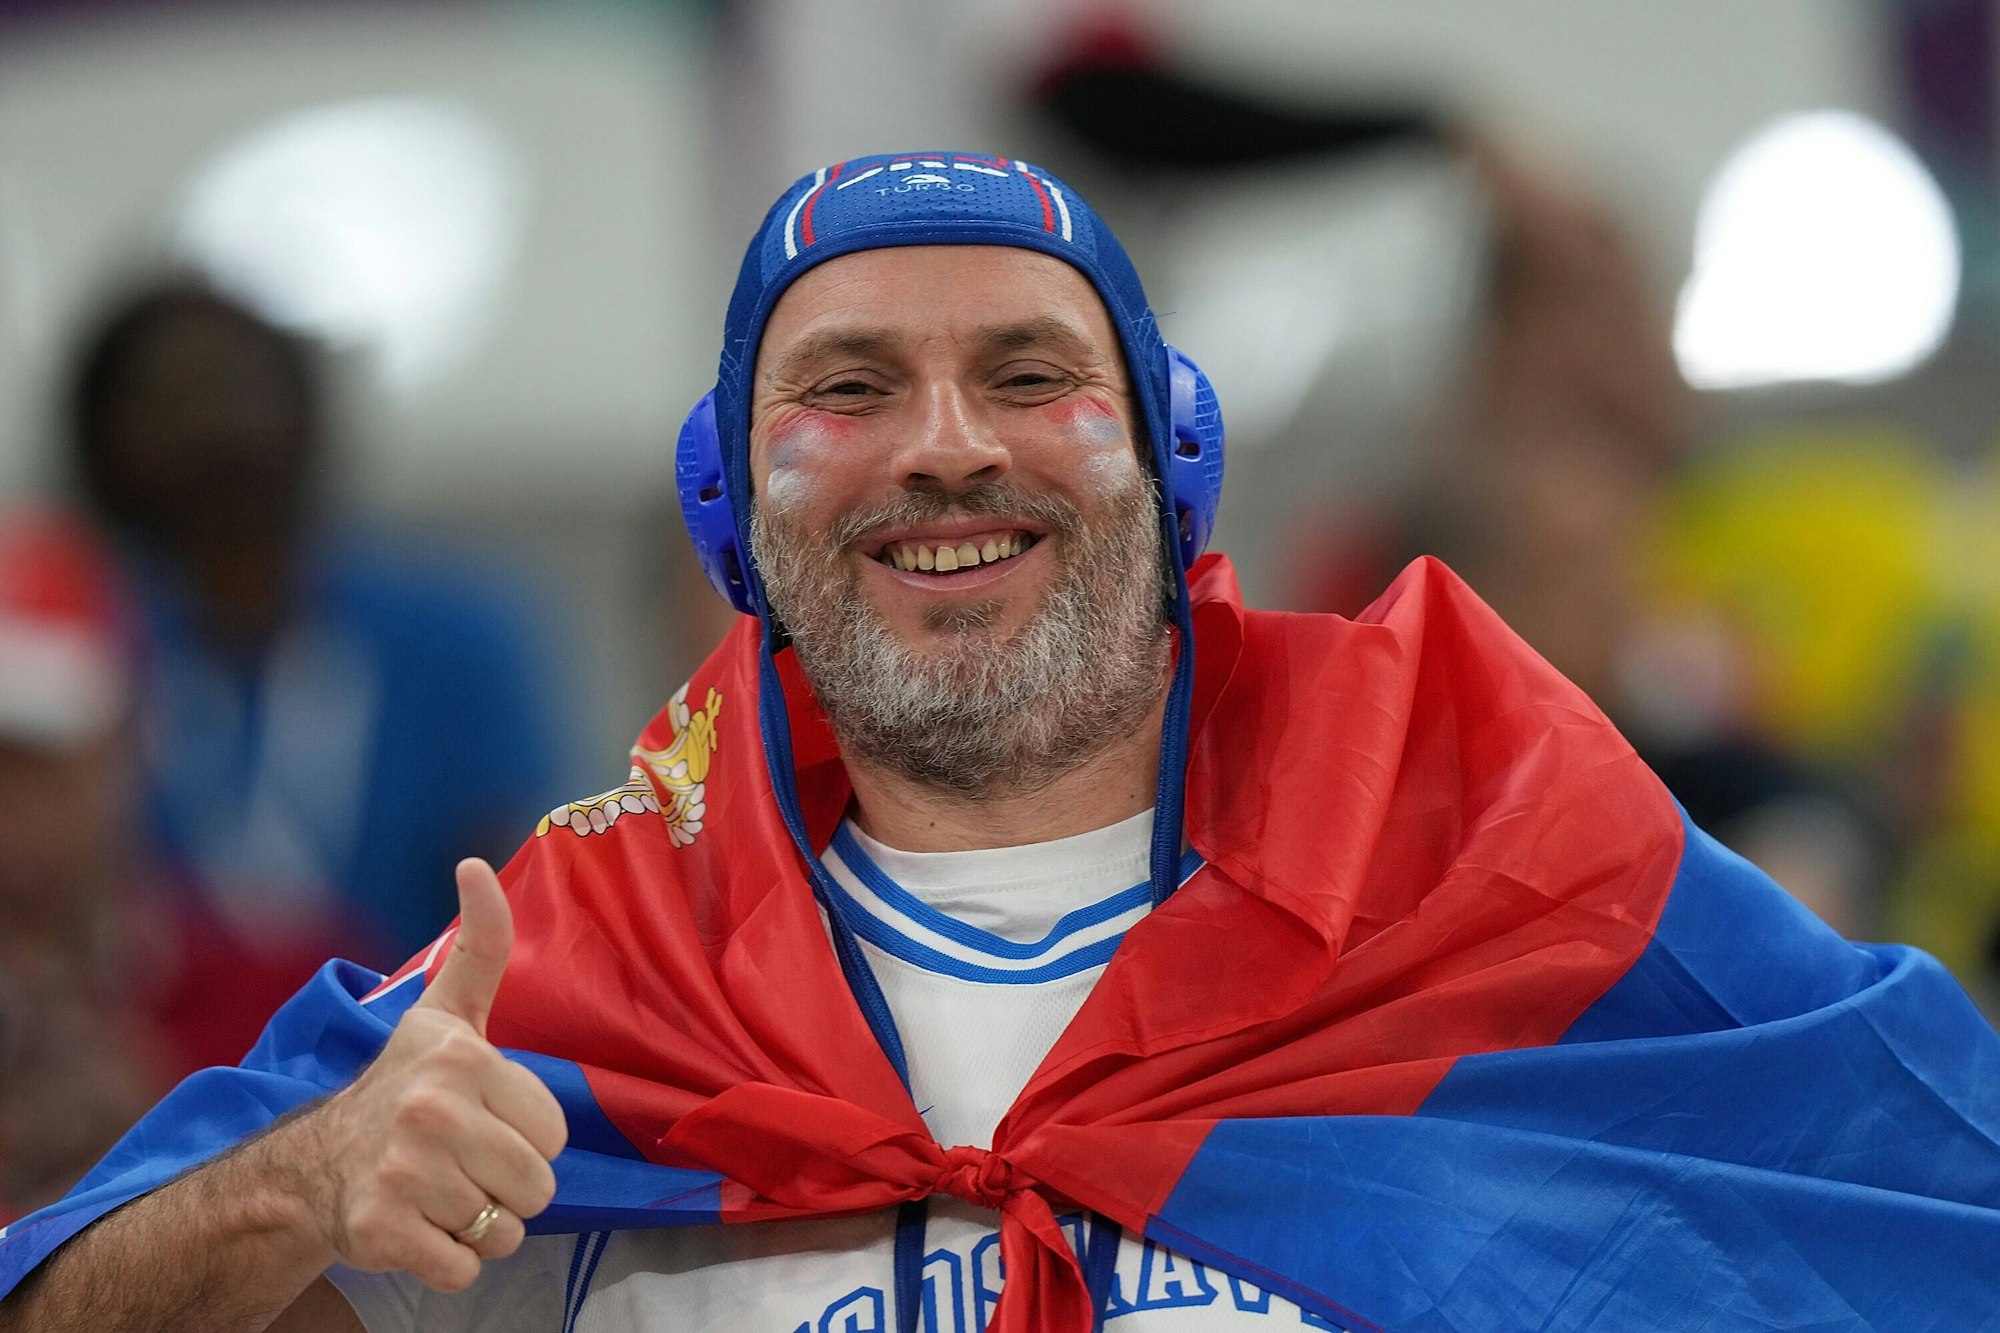 Ein serbischer Fan trägt einen Wasserball-Kopfschutz und zeigt dabei einen Daumen hoch in die Kamera.